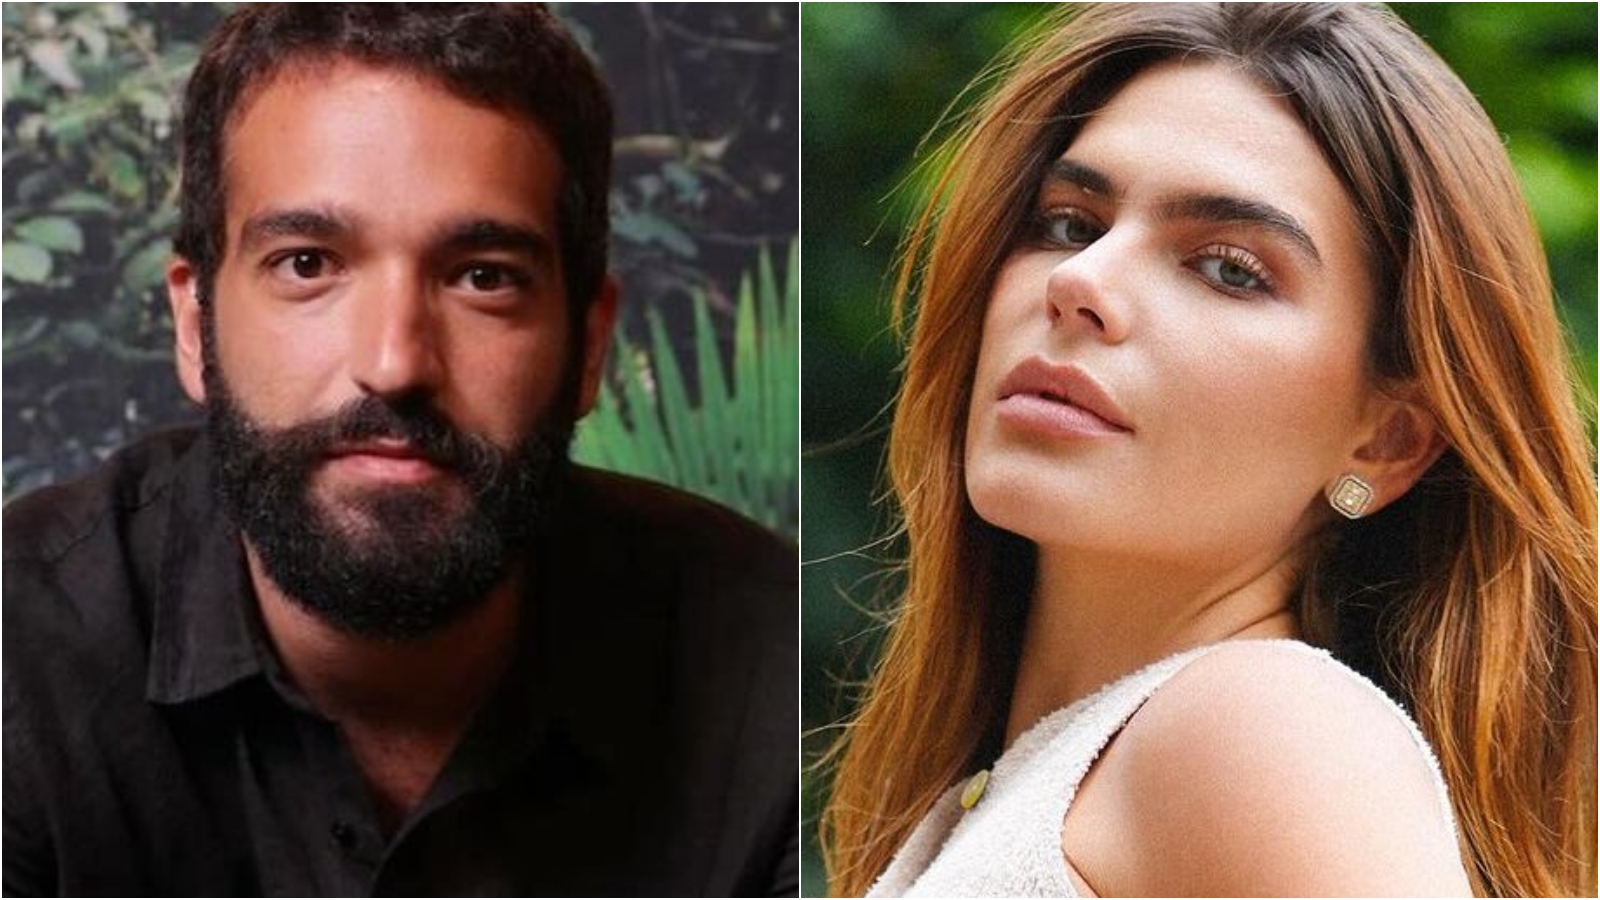 Novo casal? Humberto Carrão e Mariana Goldfarb trocam beijos em roda de samba, no Rio